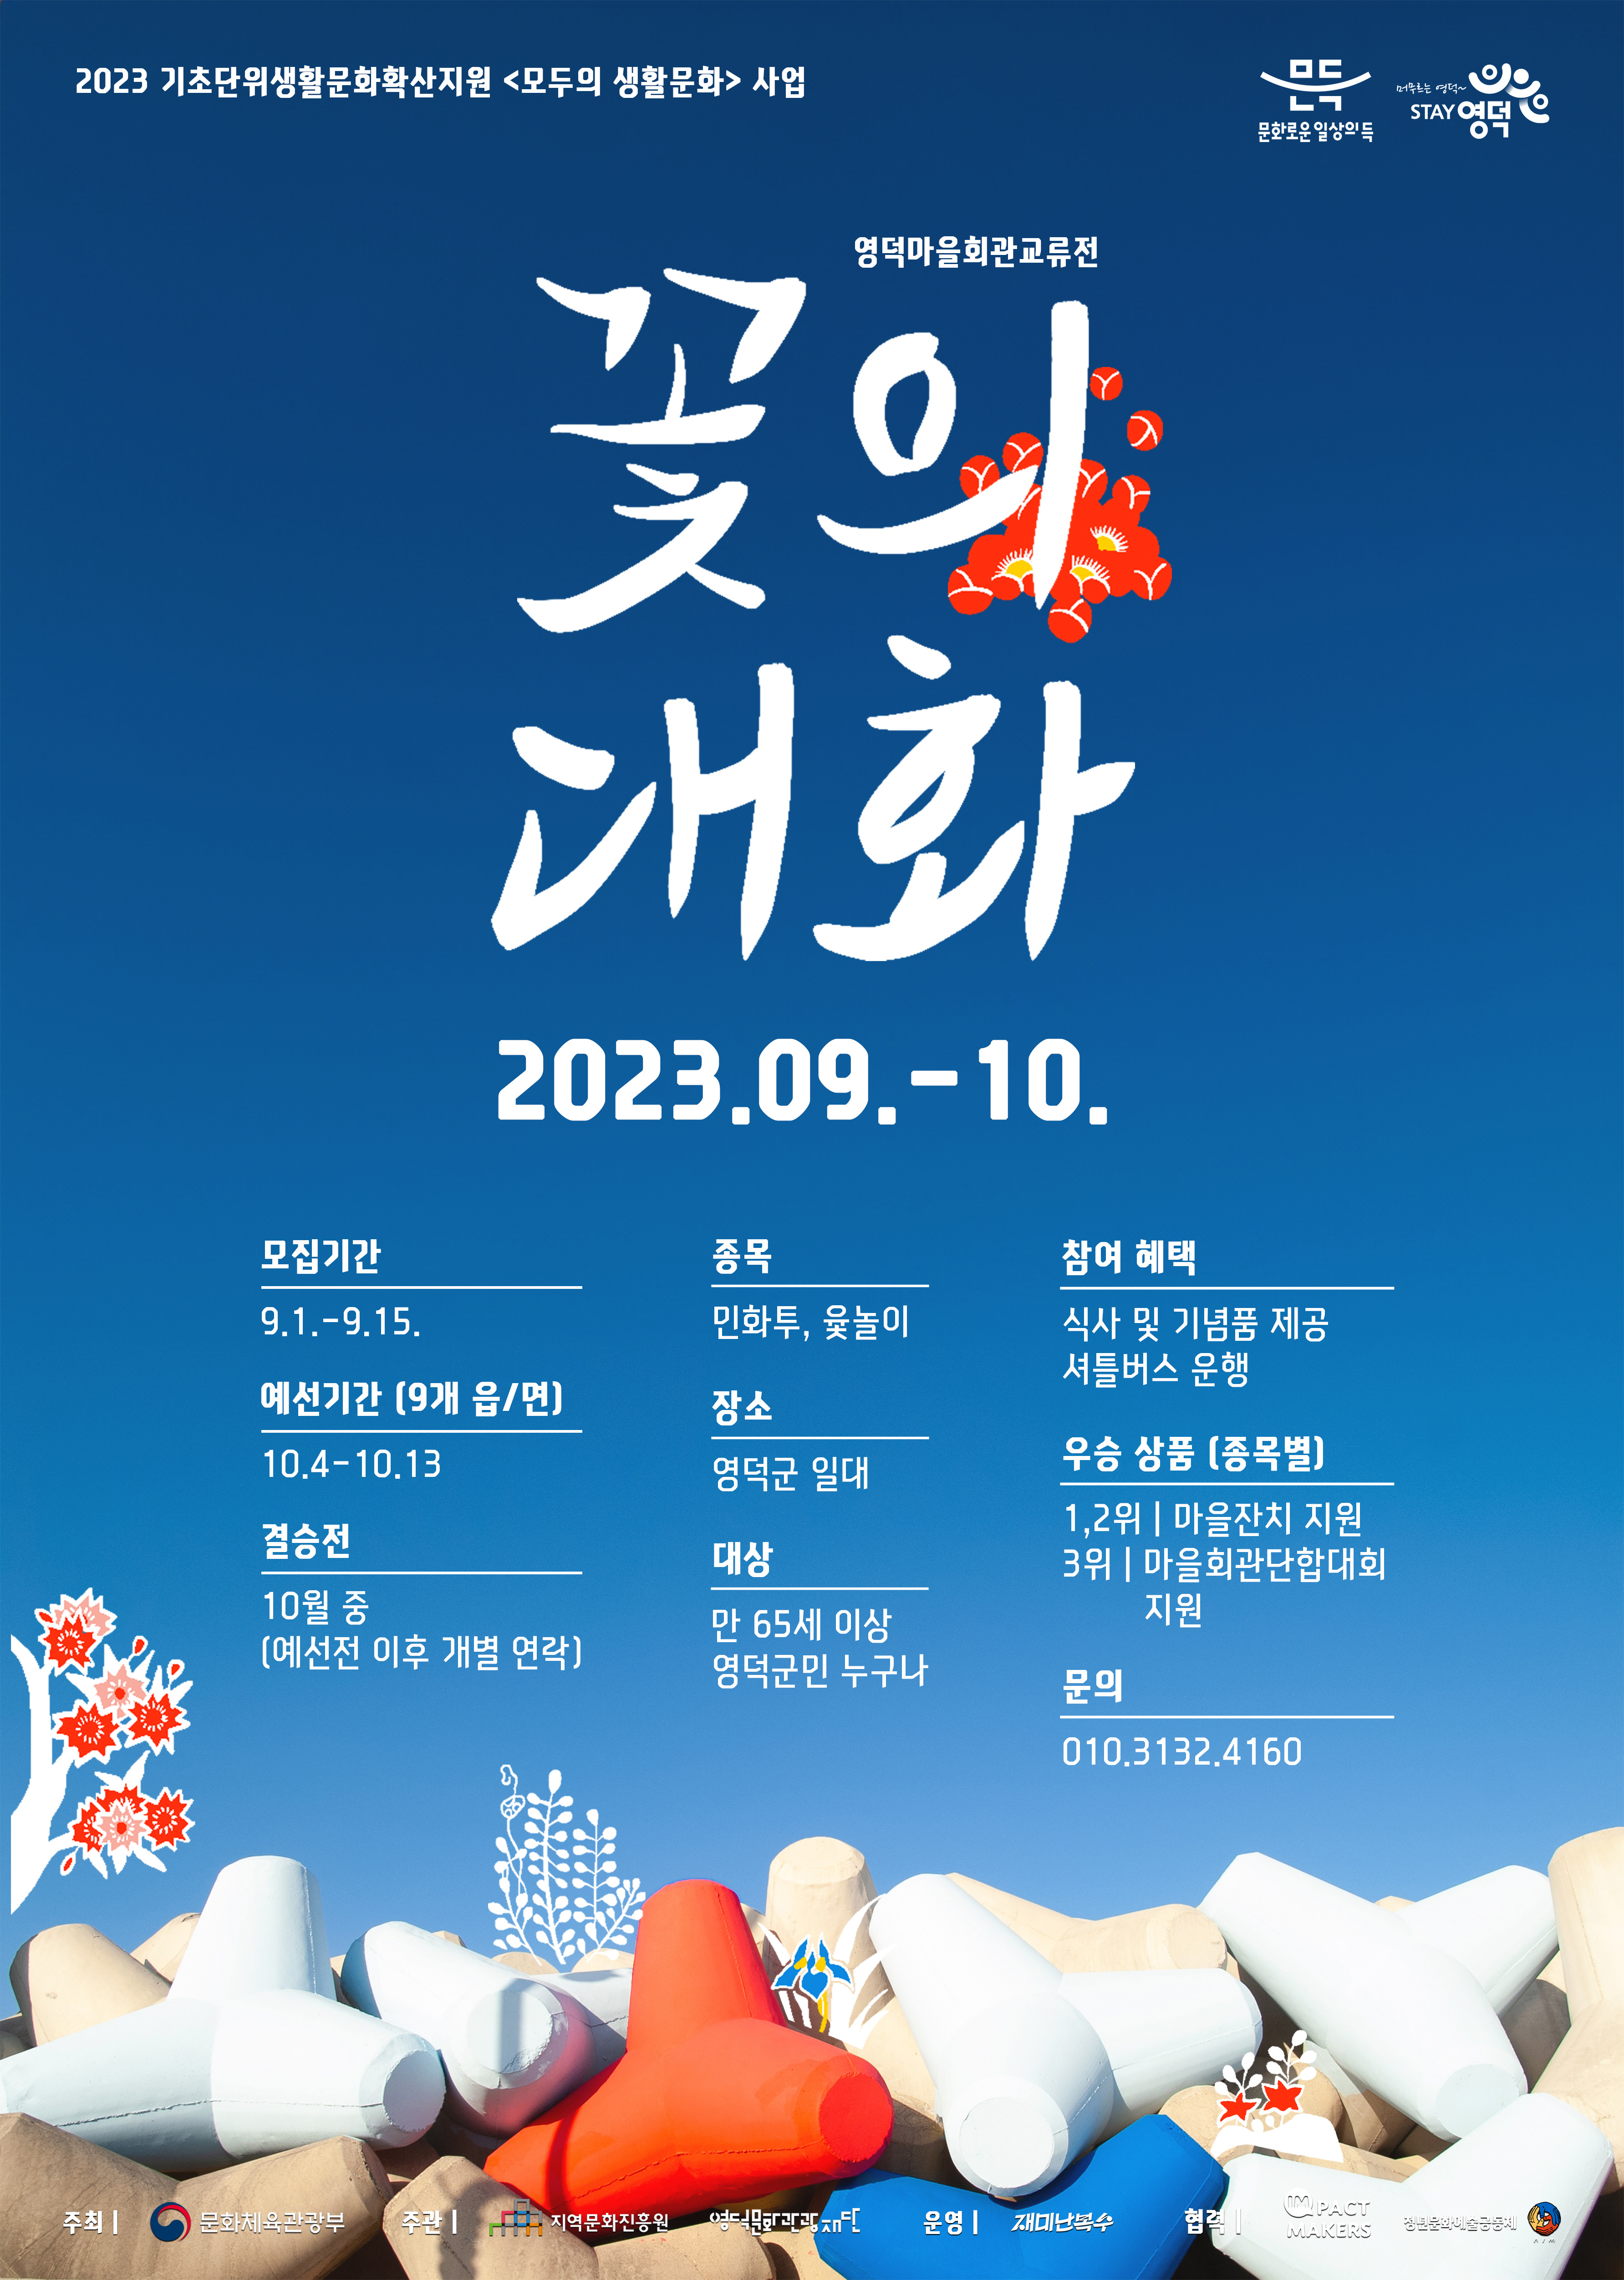 2023영덕마을회관교류전<꽃의대화> 참여마을 모집